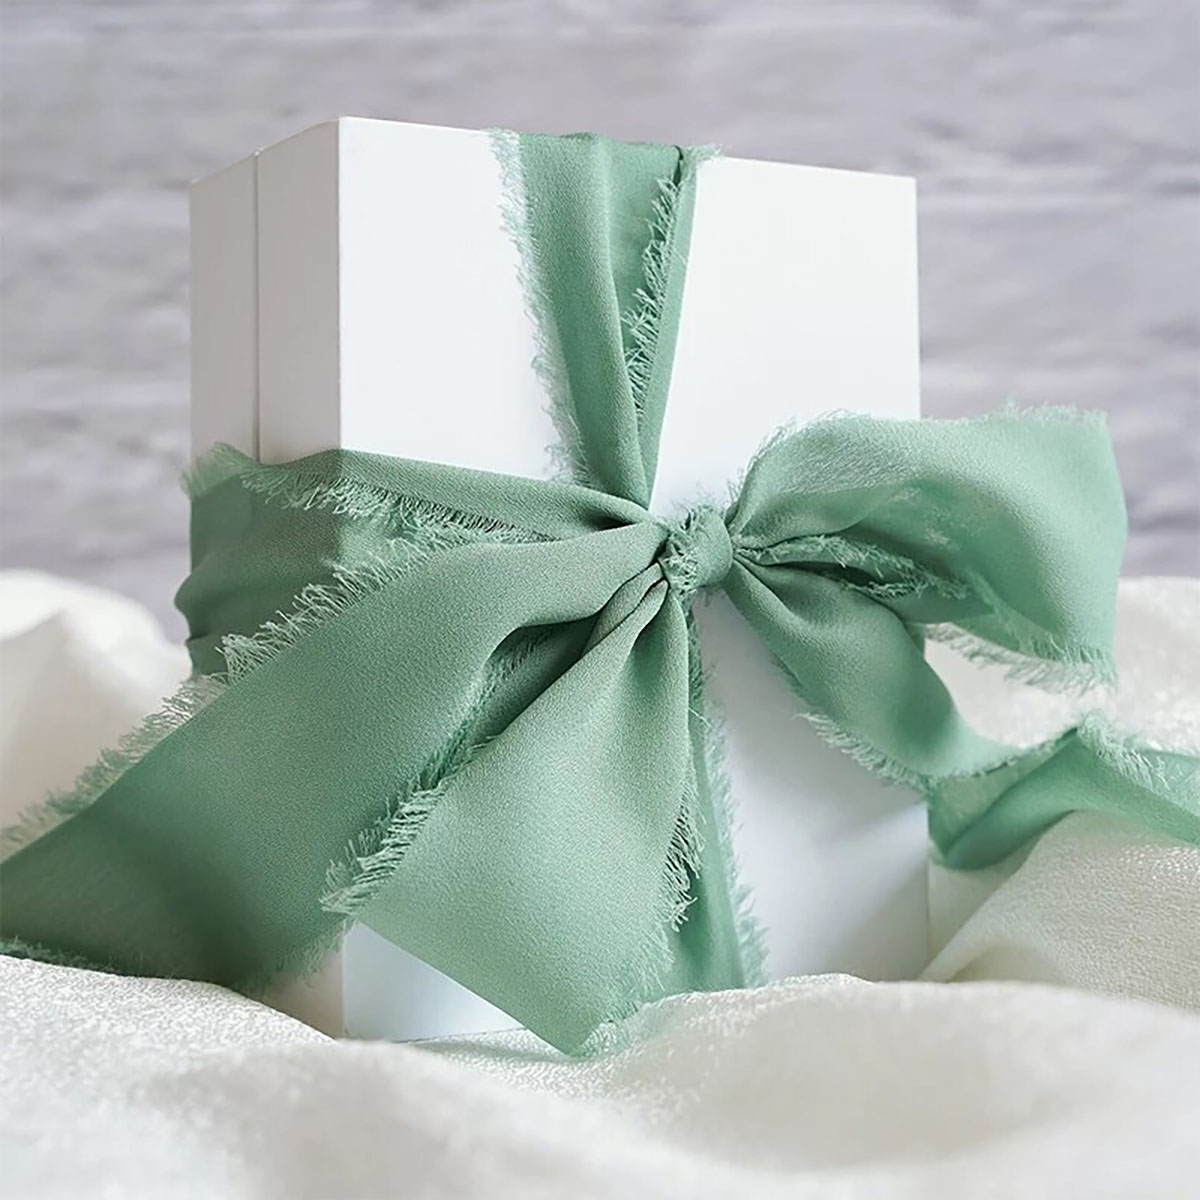 Satin Ribbon Bows - Gift Wrapping